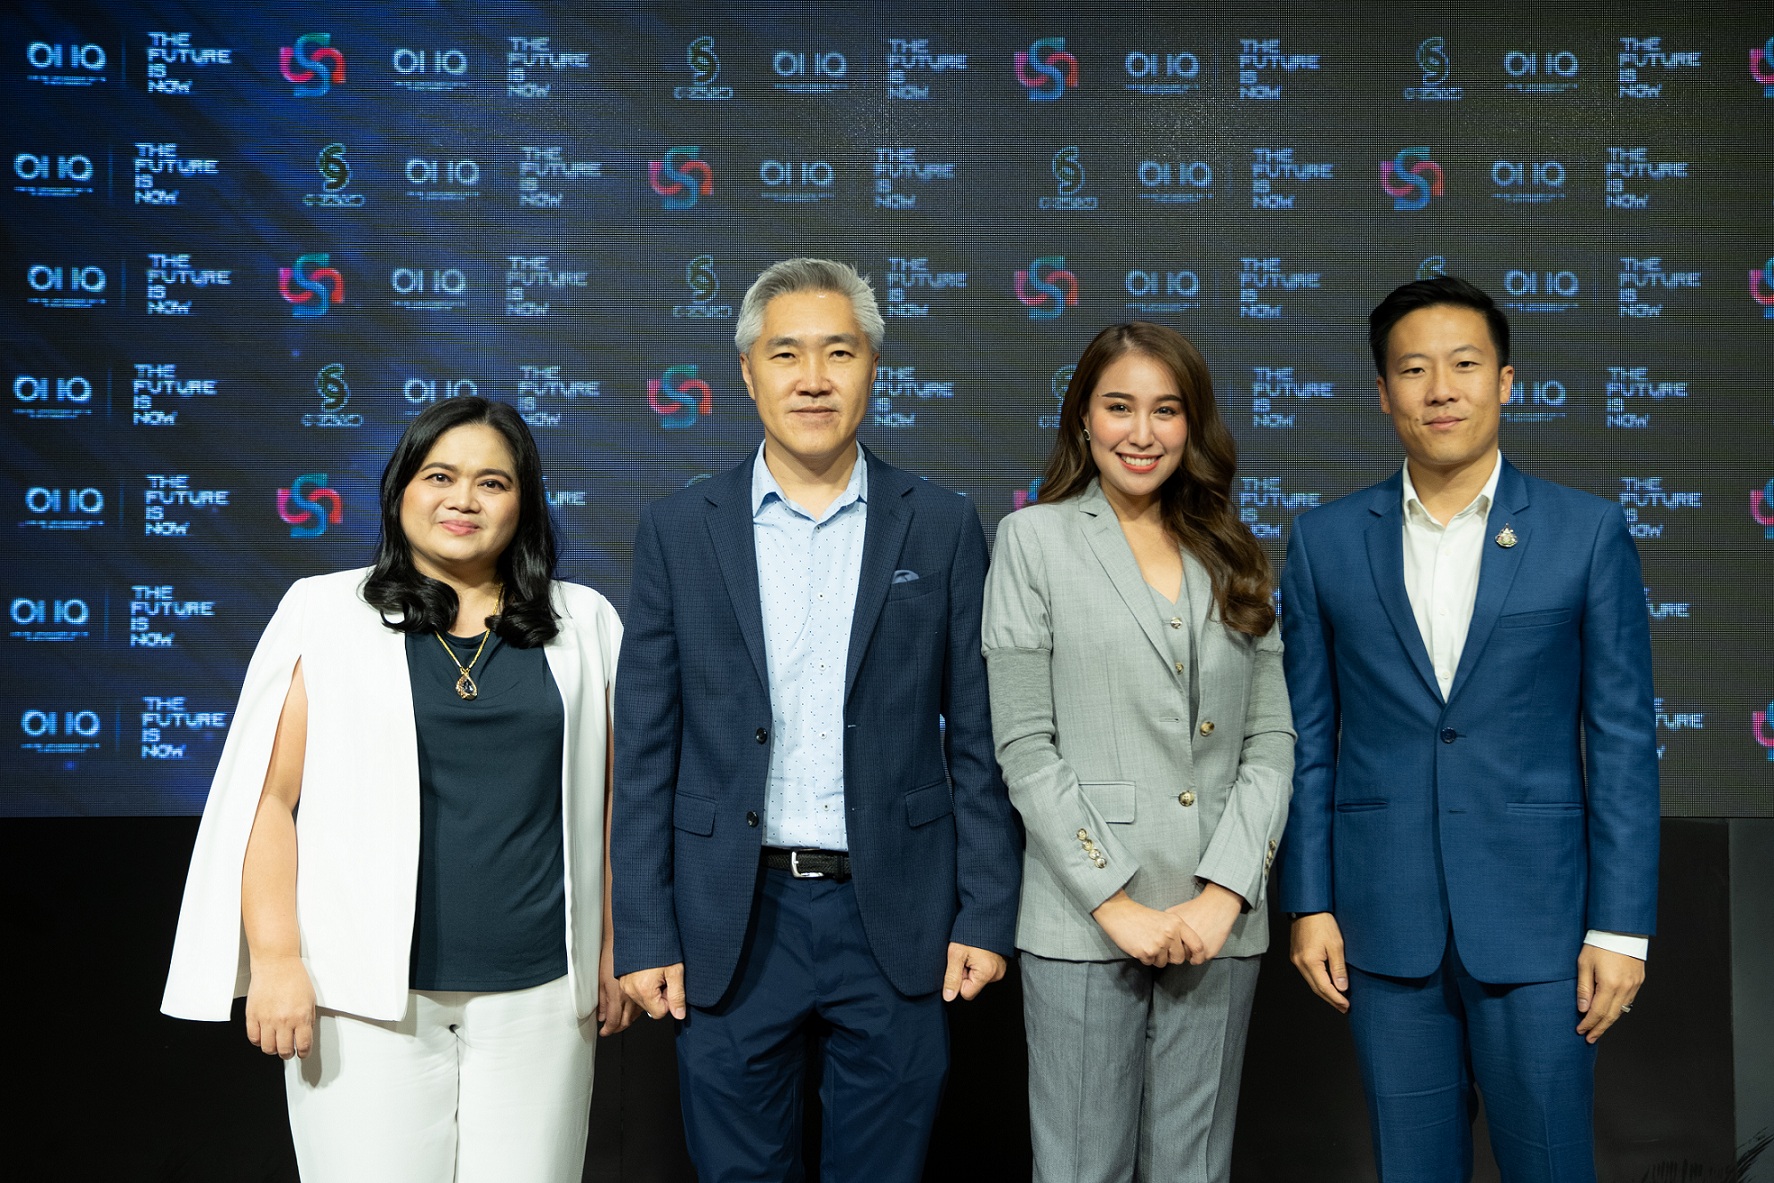 ซี-ฉัตรปวีณ์ เตรียมจัด “OIIO” Thailand TECHLAND 2019 งานโชว์เทคโนโลยีนับ 01-10 สู่อนาคต